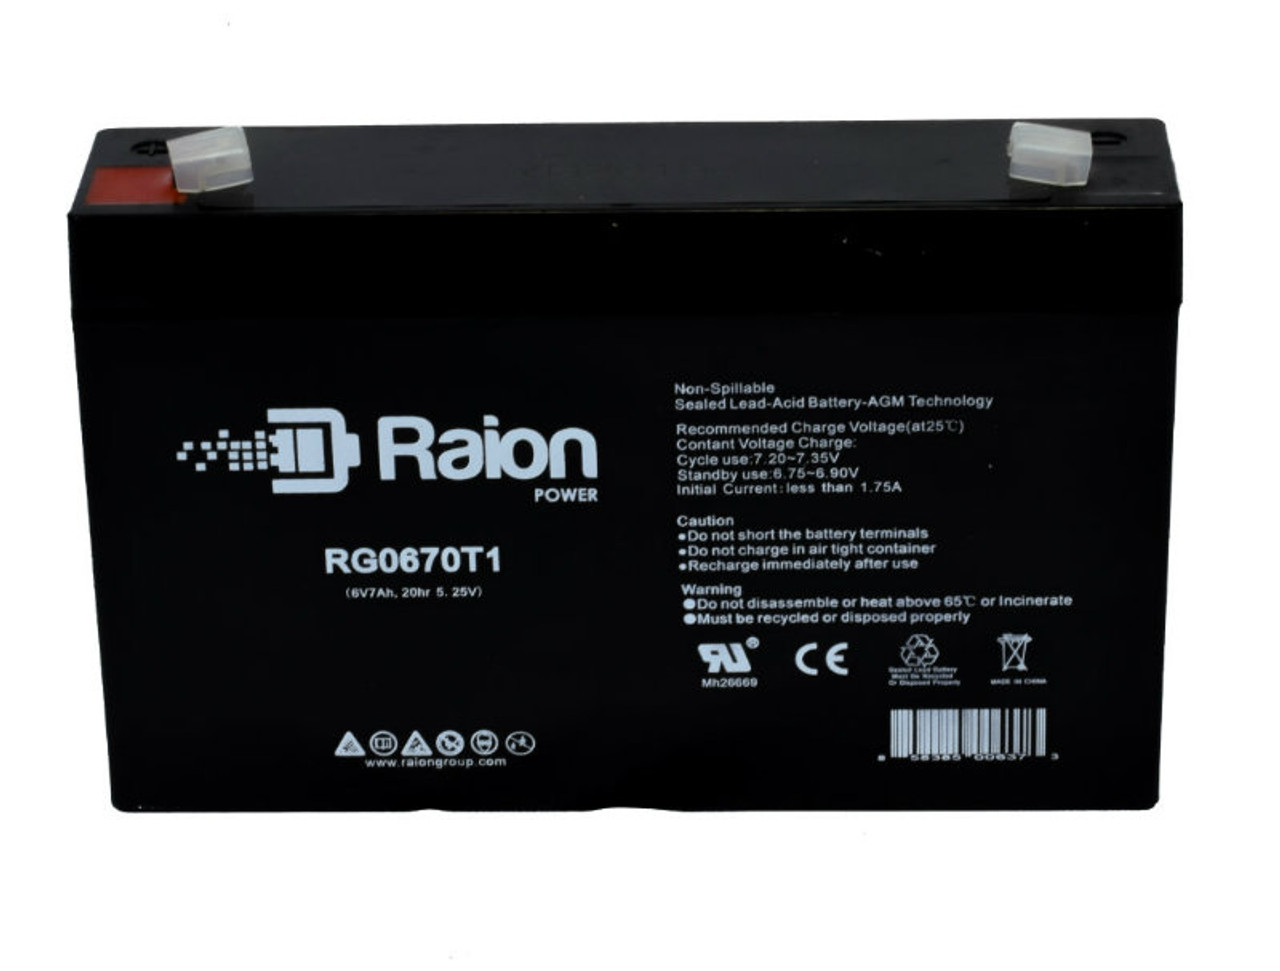 Raion Power RG0670T1 SLA Battery for Guardian DG6-7F OEM Battery